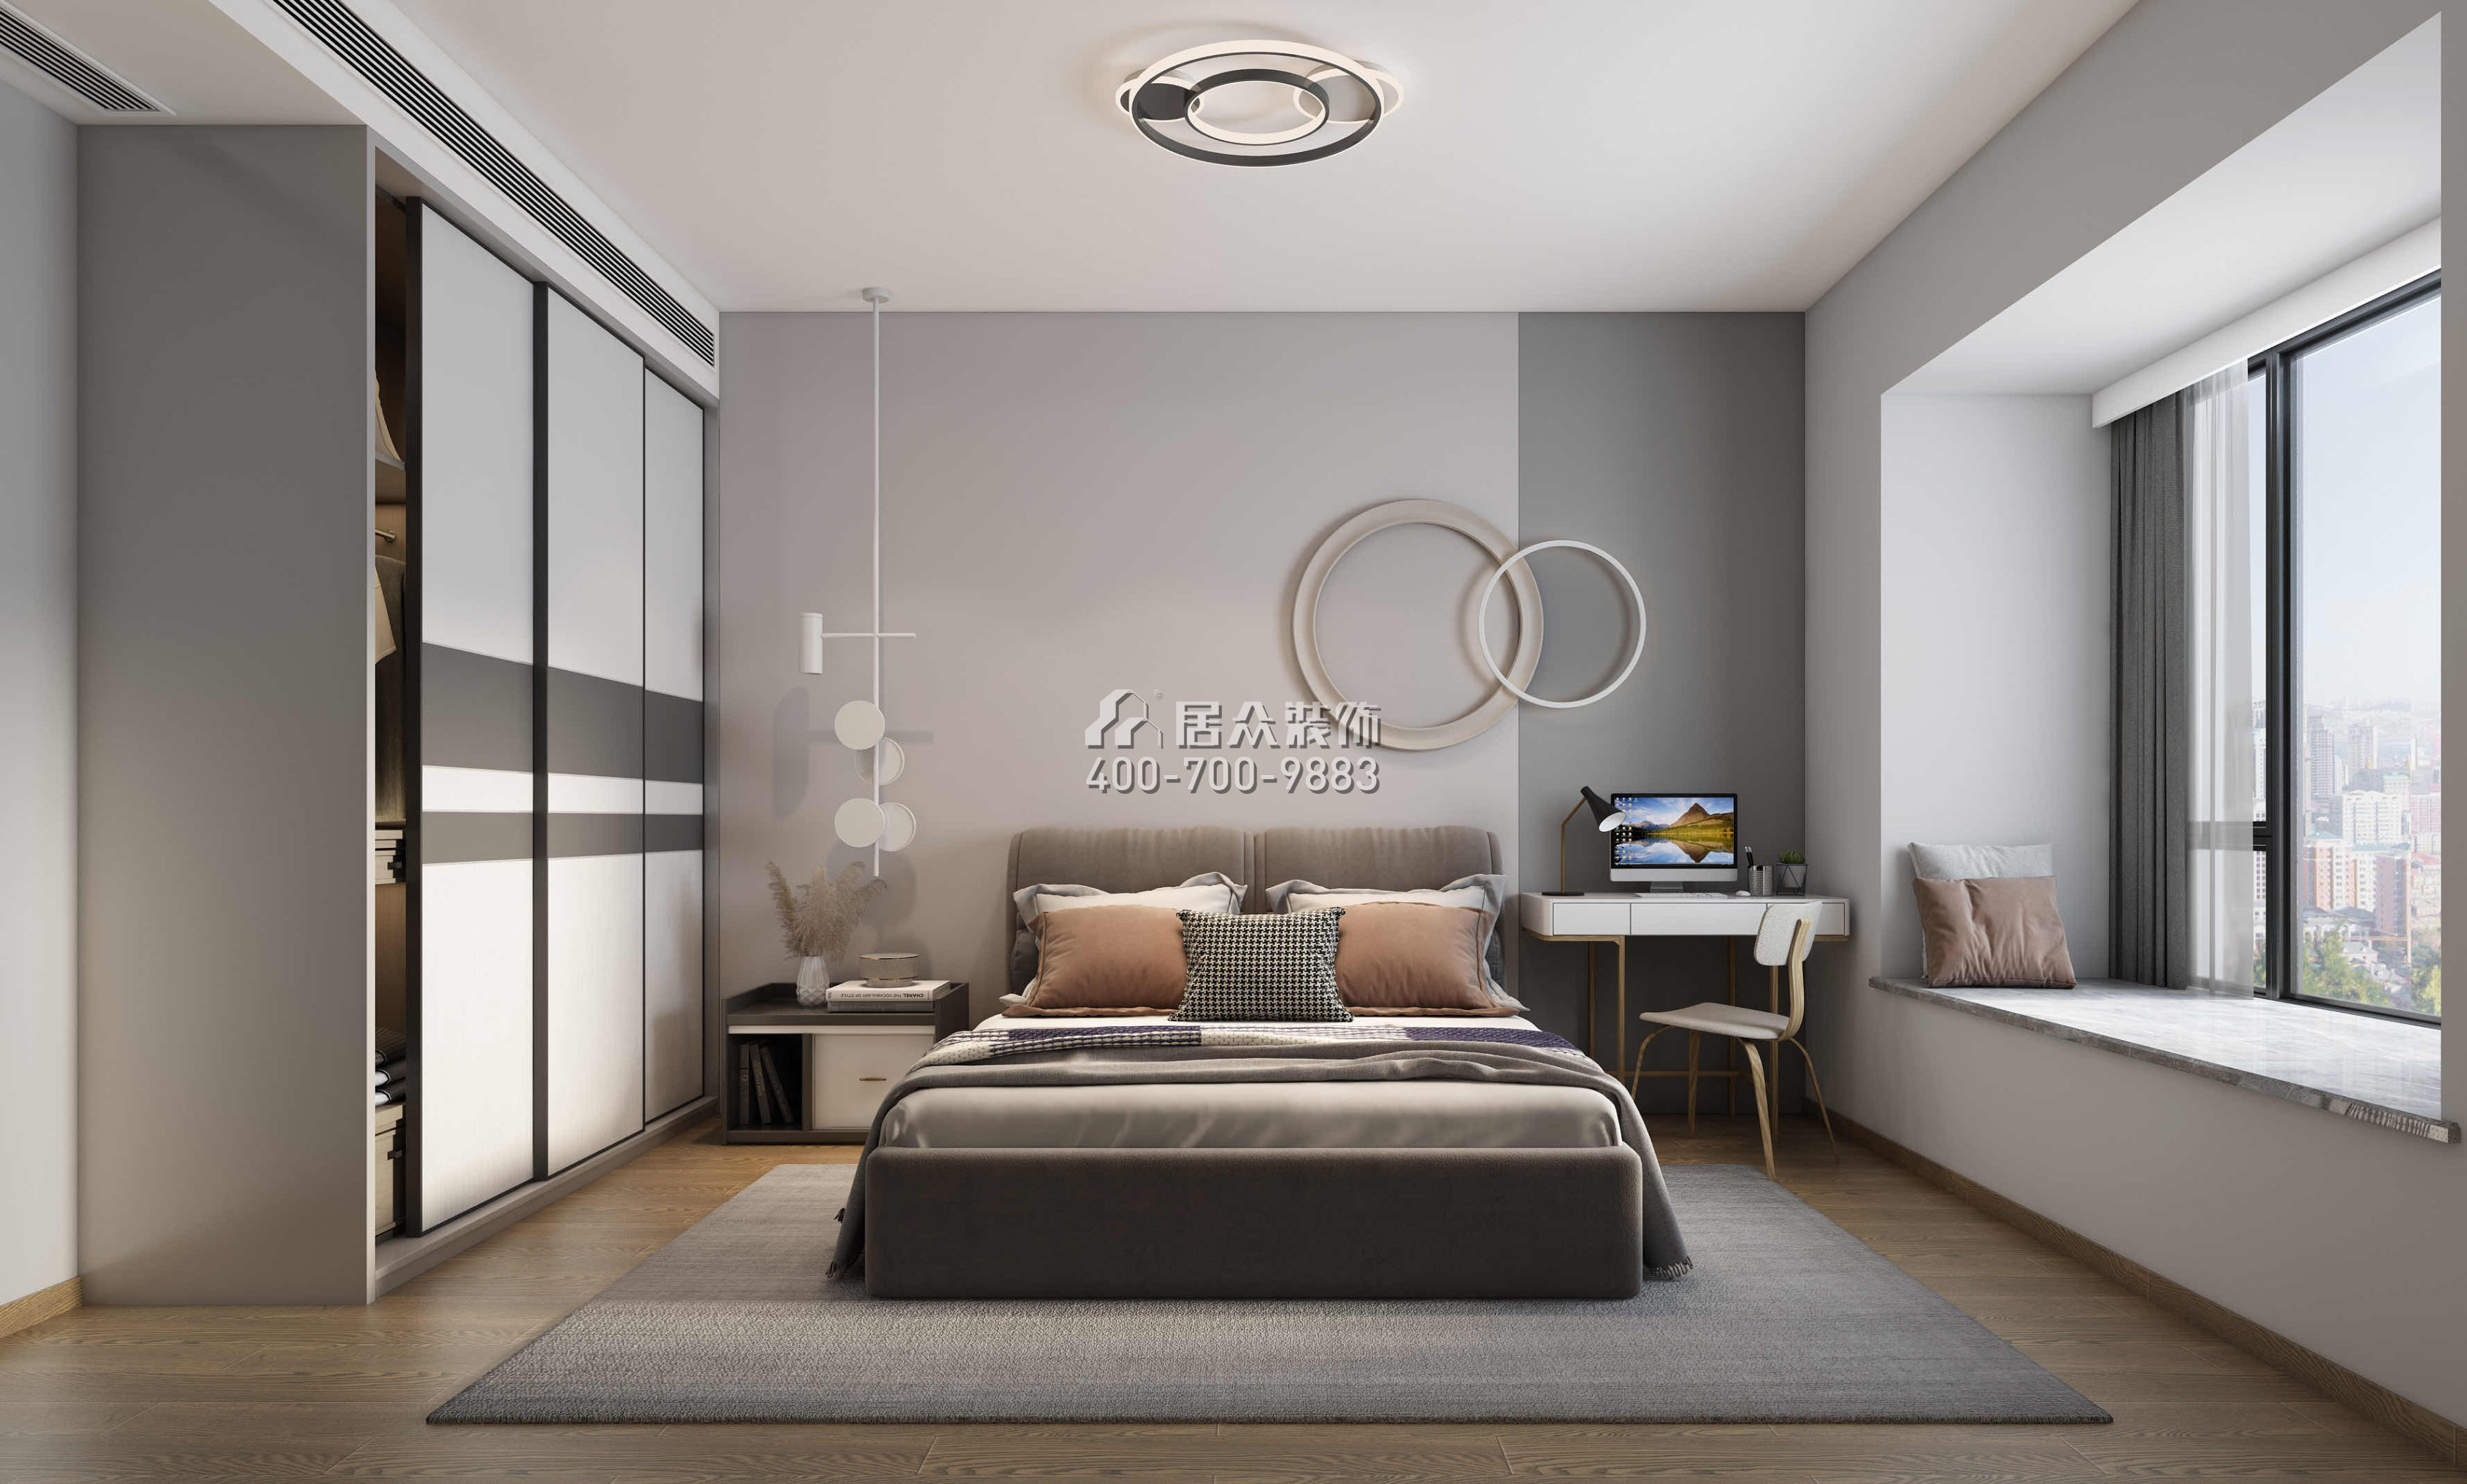 星河丹堤145平方米現代簡約風格平層戶型臥室裝修效果圖